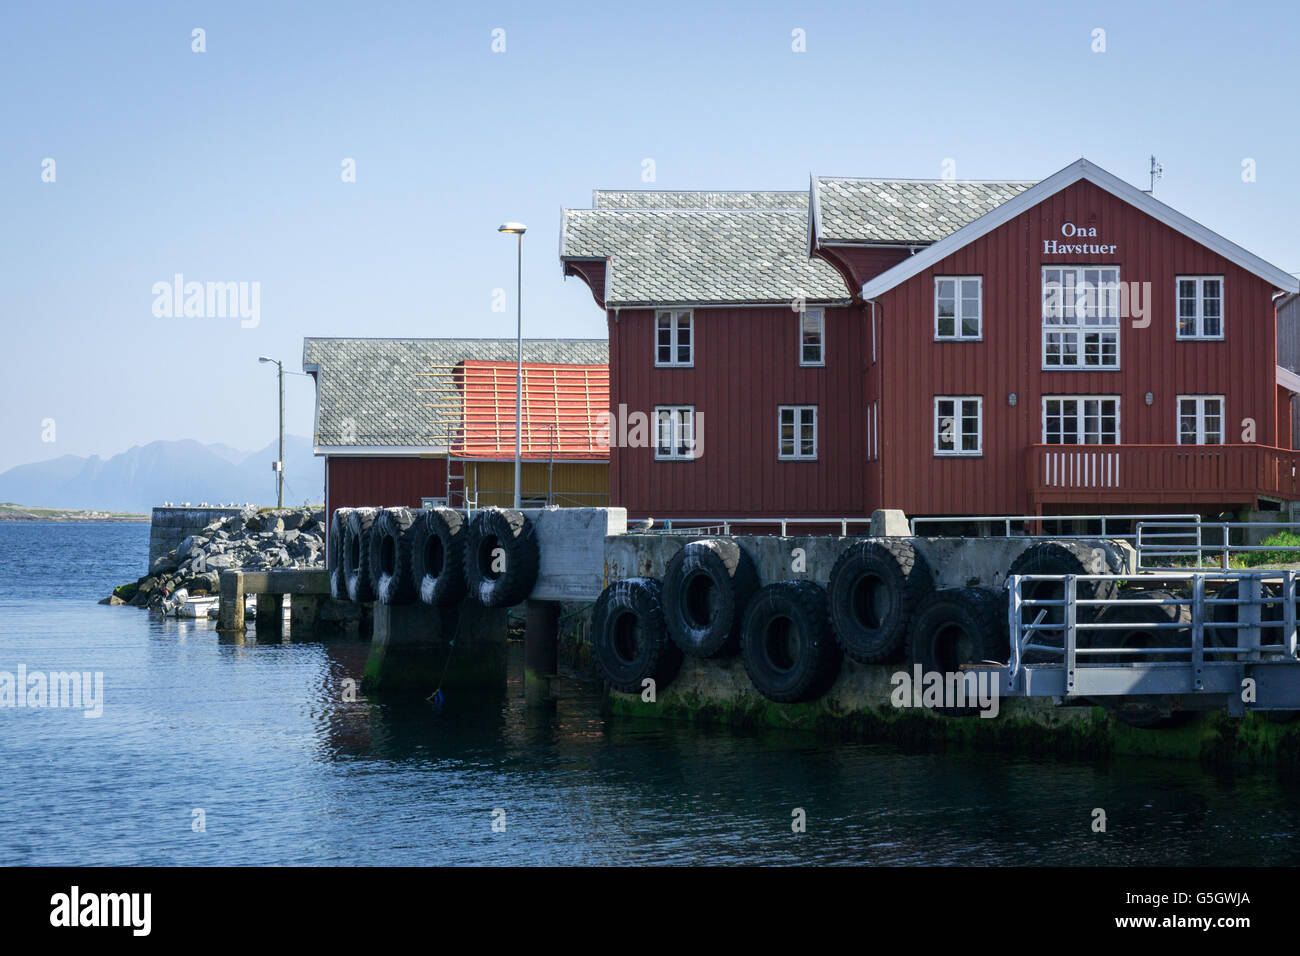 Ona harbor, and Ona Havstuer Stock Photo